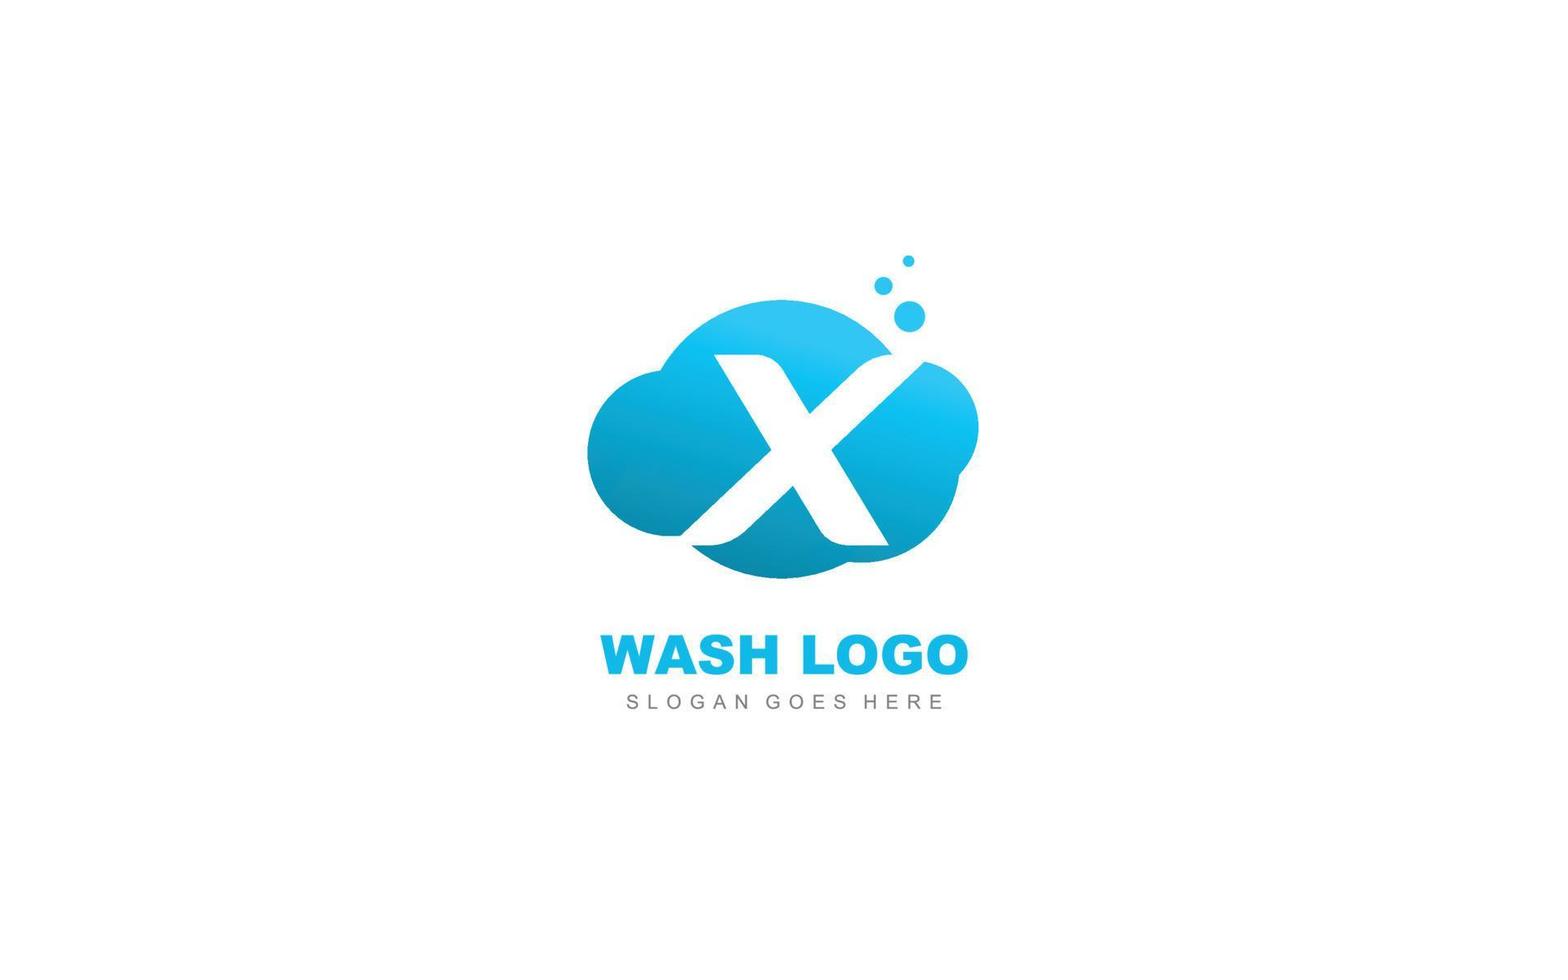 nube de logotipo x para la empresa de marca. ilustración de vector de plantilla de carta para su marca.